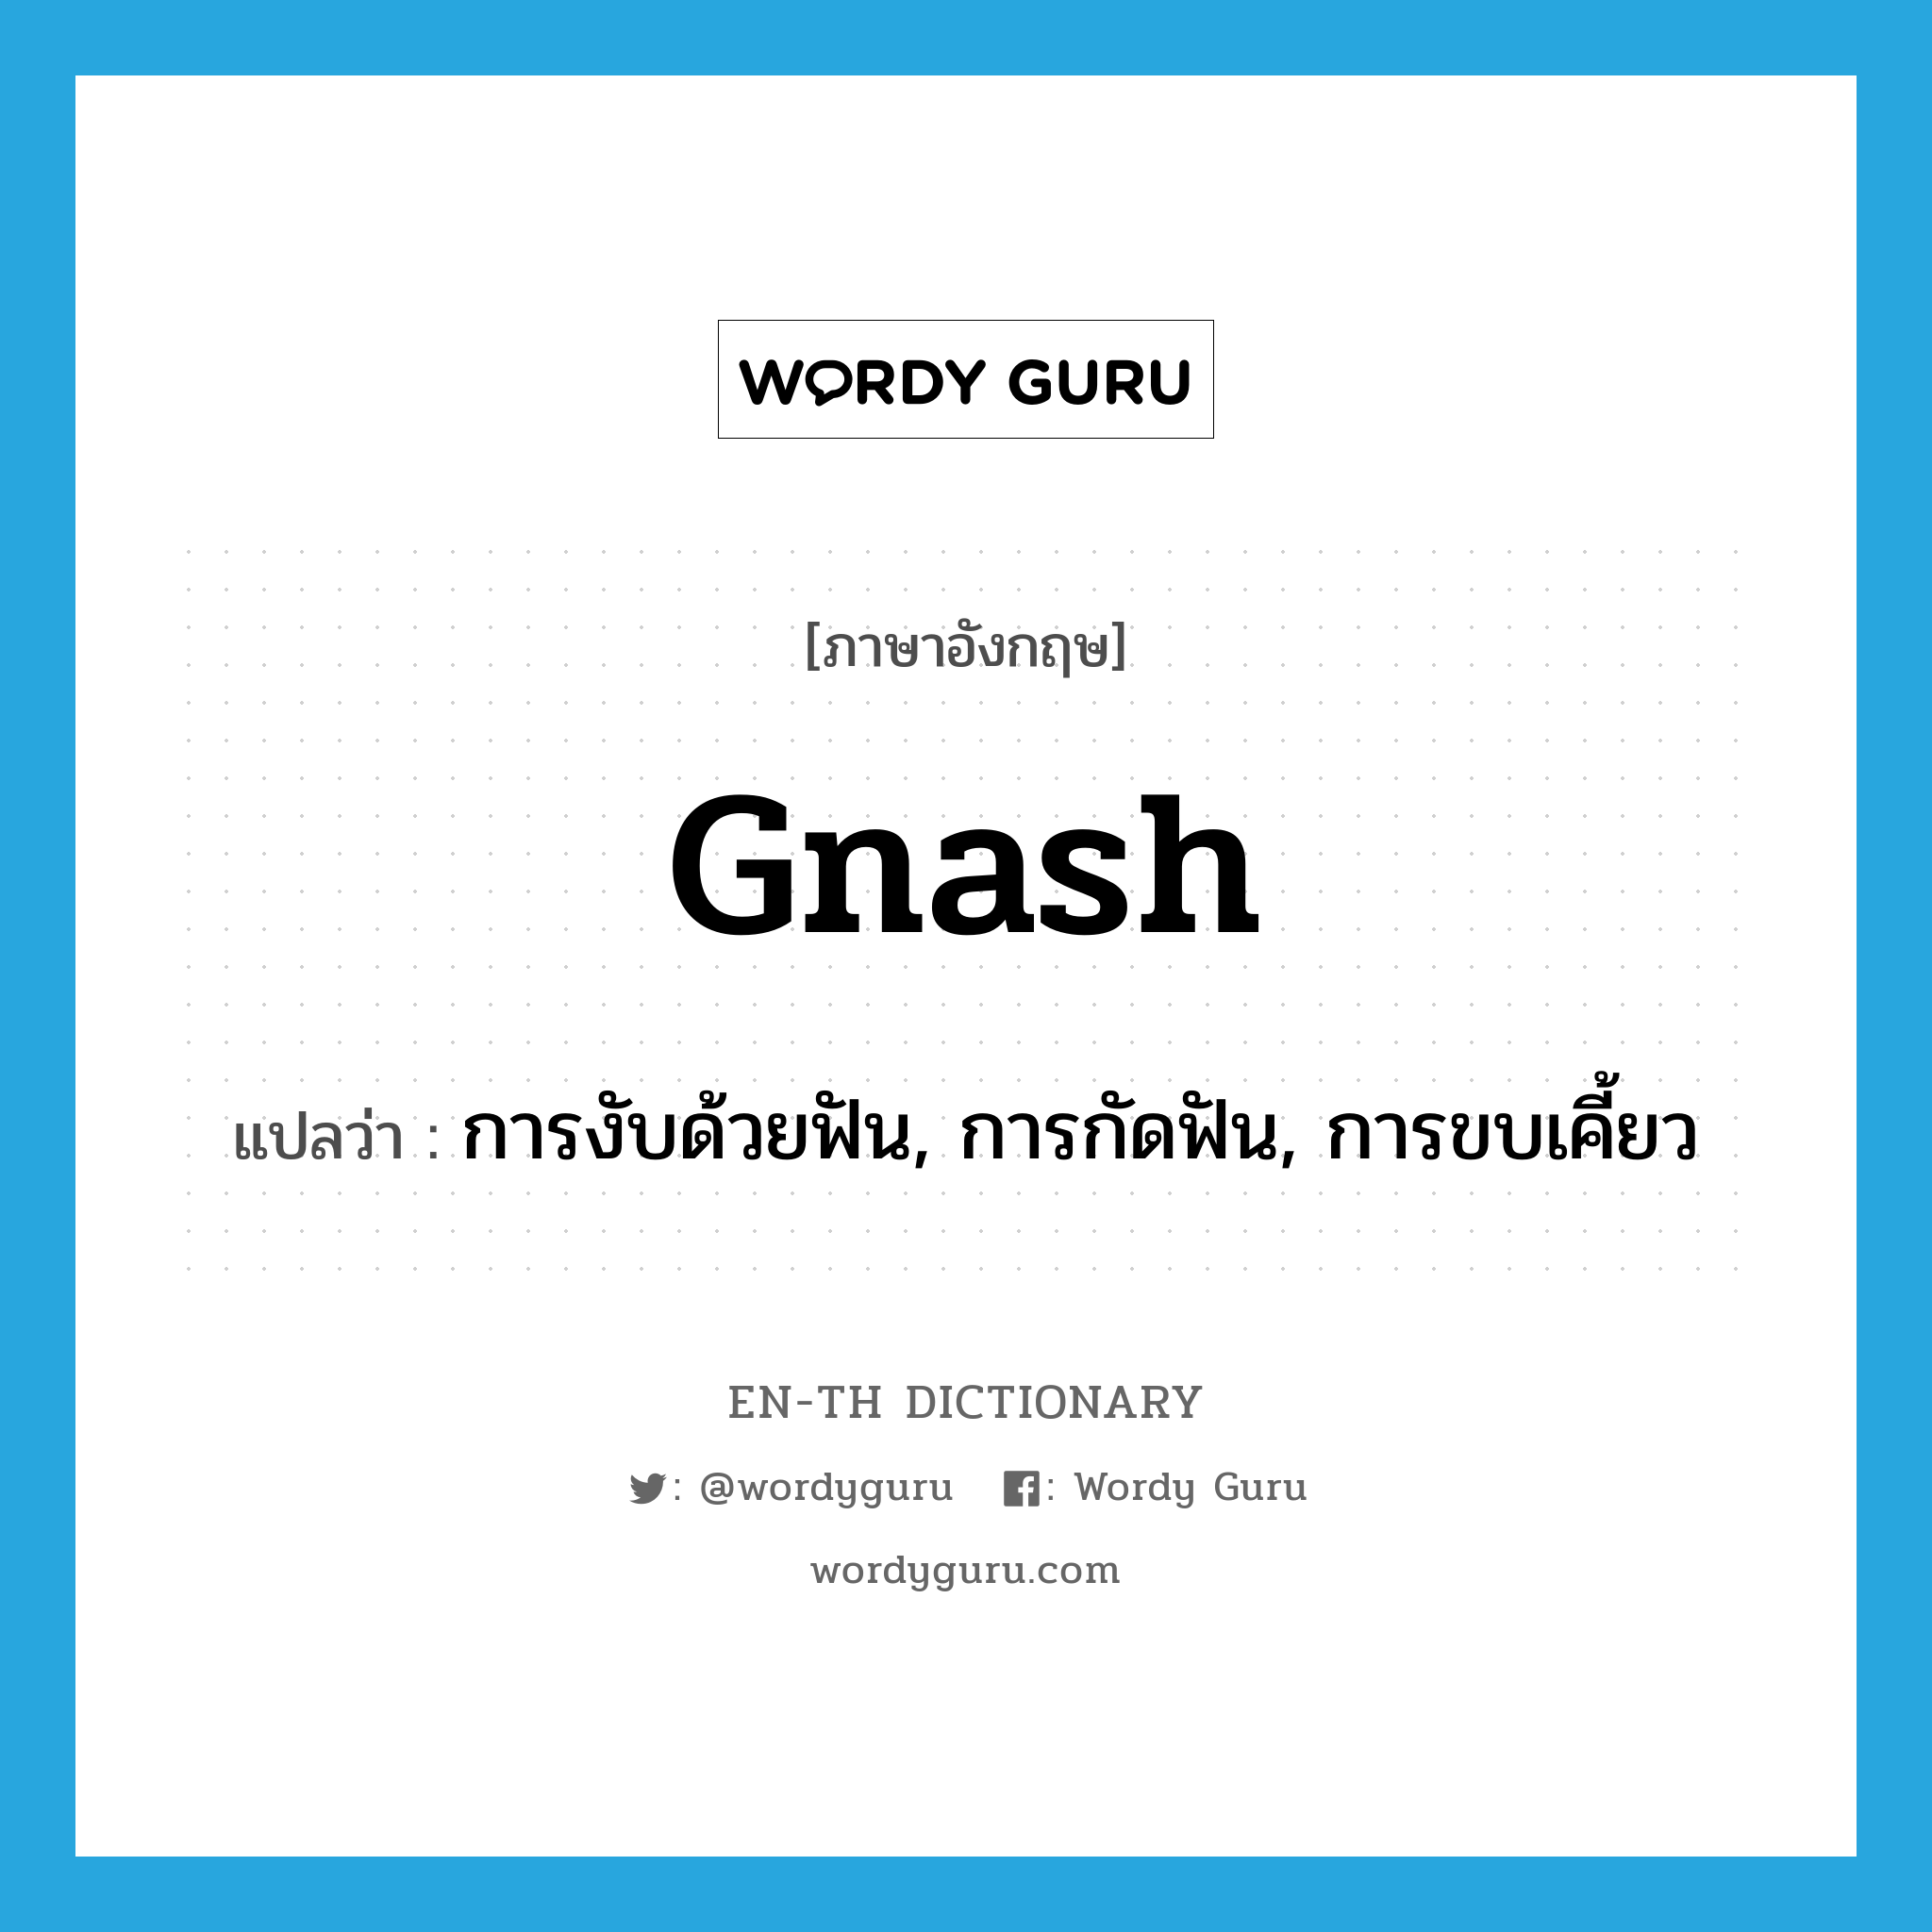 gnash แปลว่า?, คำศัพท์ภาษาอังกฤษ gnash แปลว่า การงับด้วยฟัน, การกัดฟัน, การขบเคี้ยว ประเภท N หมวด N